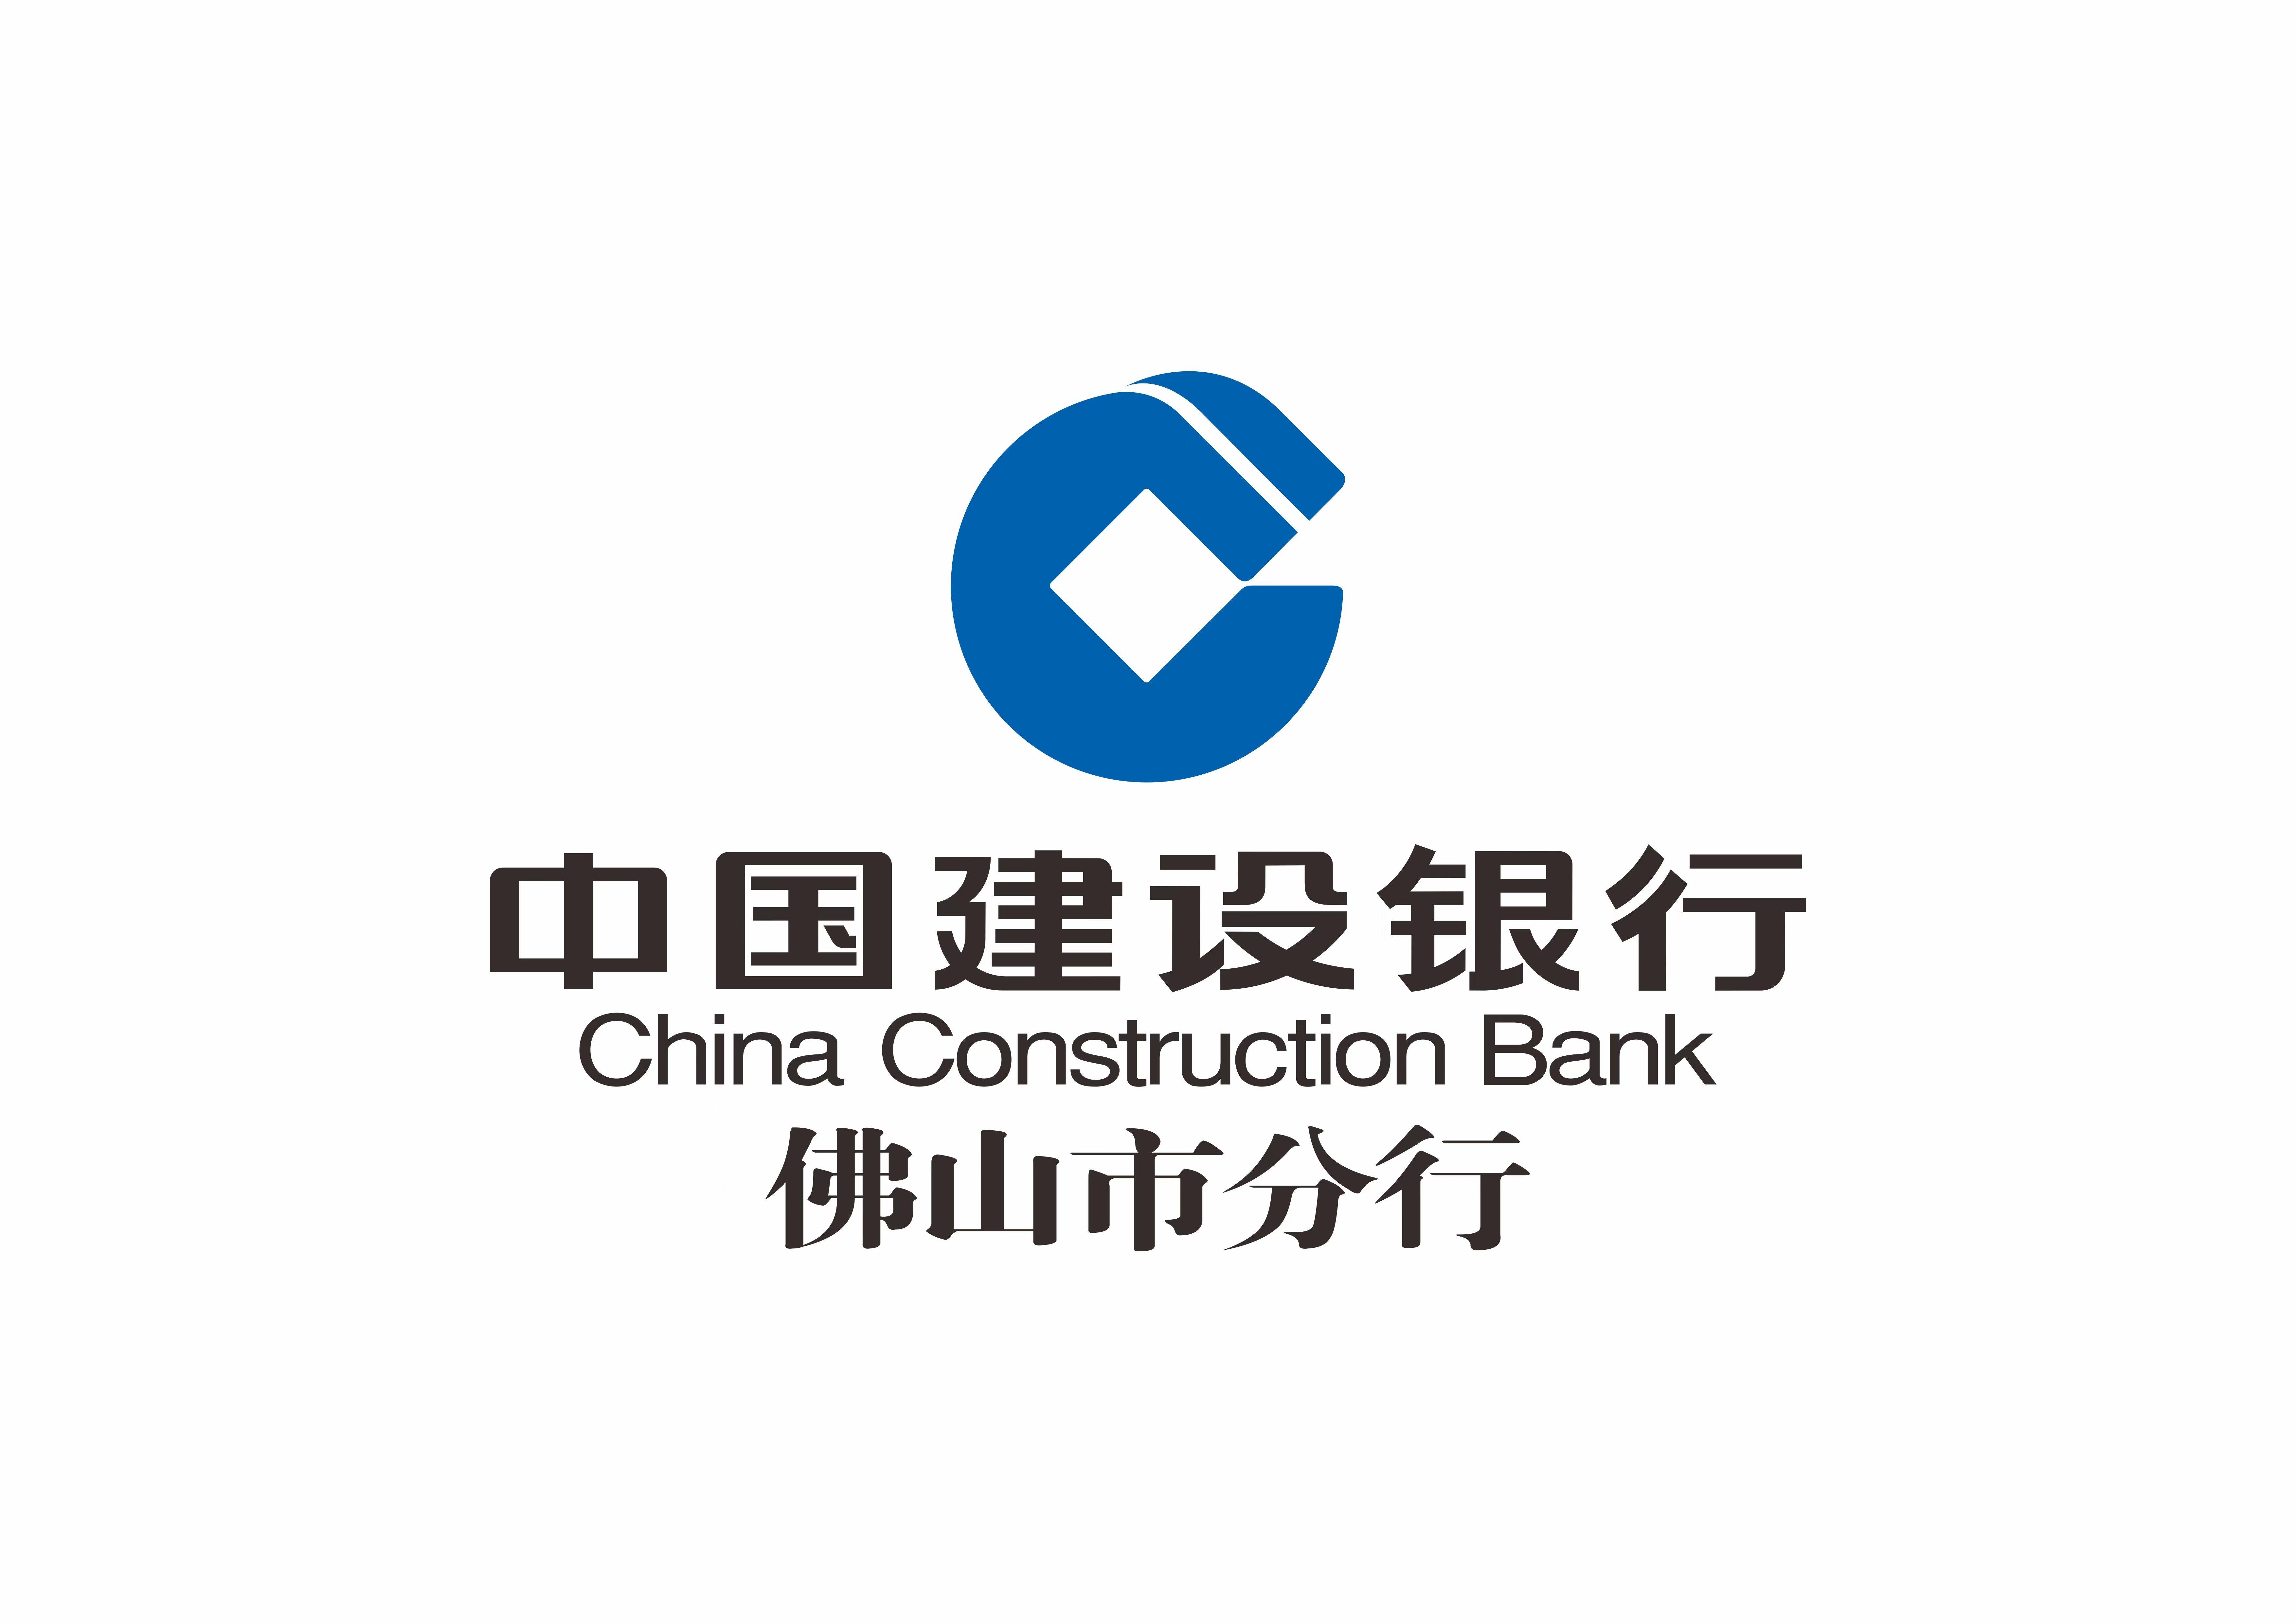 中国建设银行手机银行:中国建设银行佛山分行金融赋能农村建设